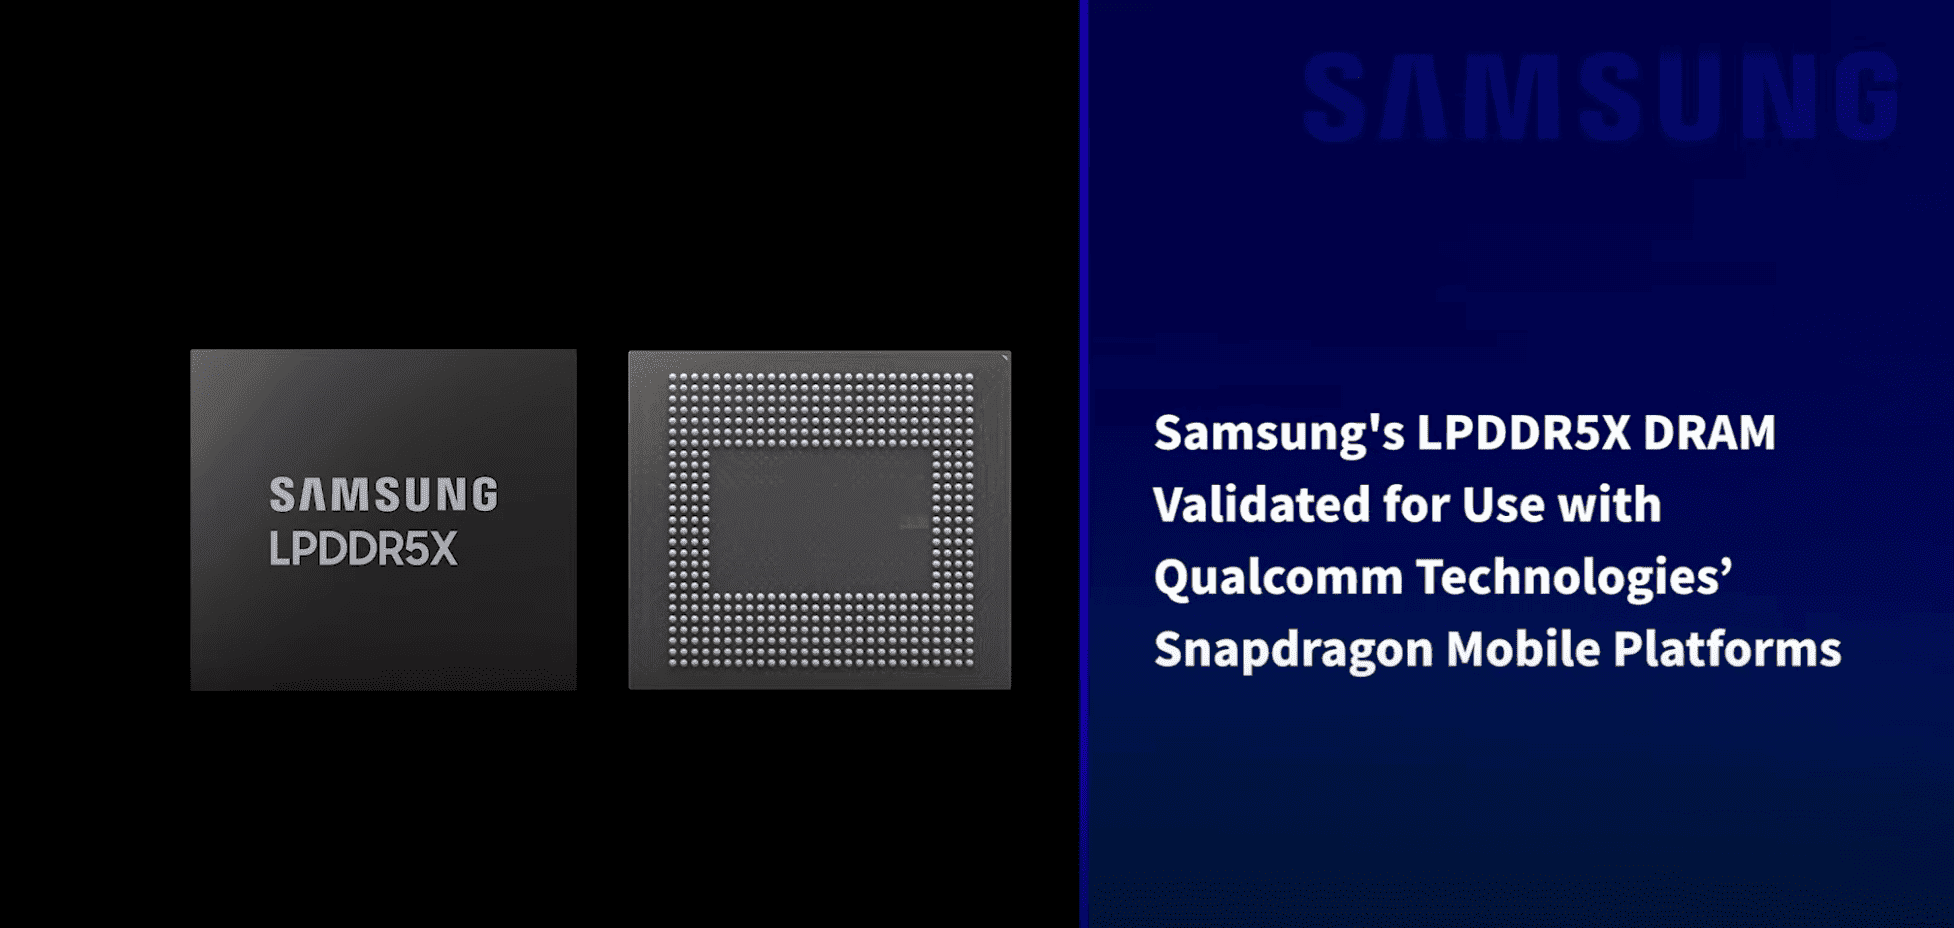 Qualcomm, Snapdragon Mobil Cihazlarda Kullanım İçin Samsung'un LPDDR5X DRAM'ini Doğruluyor